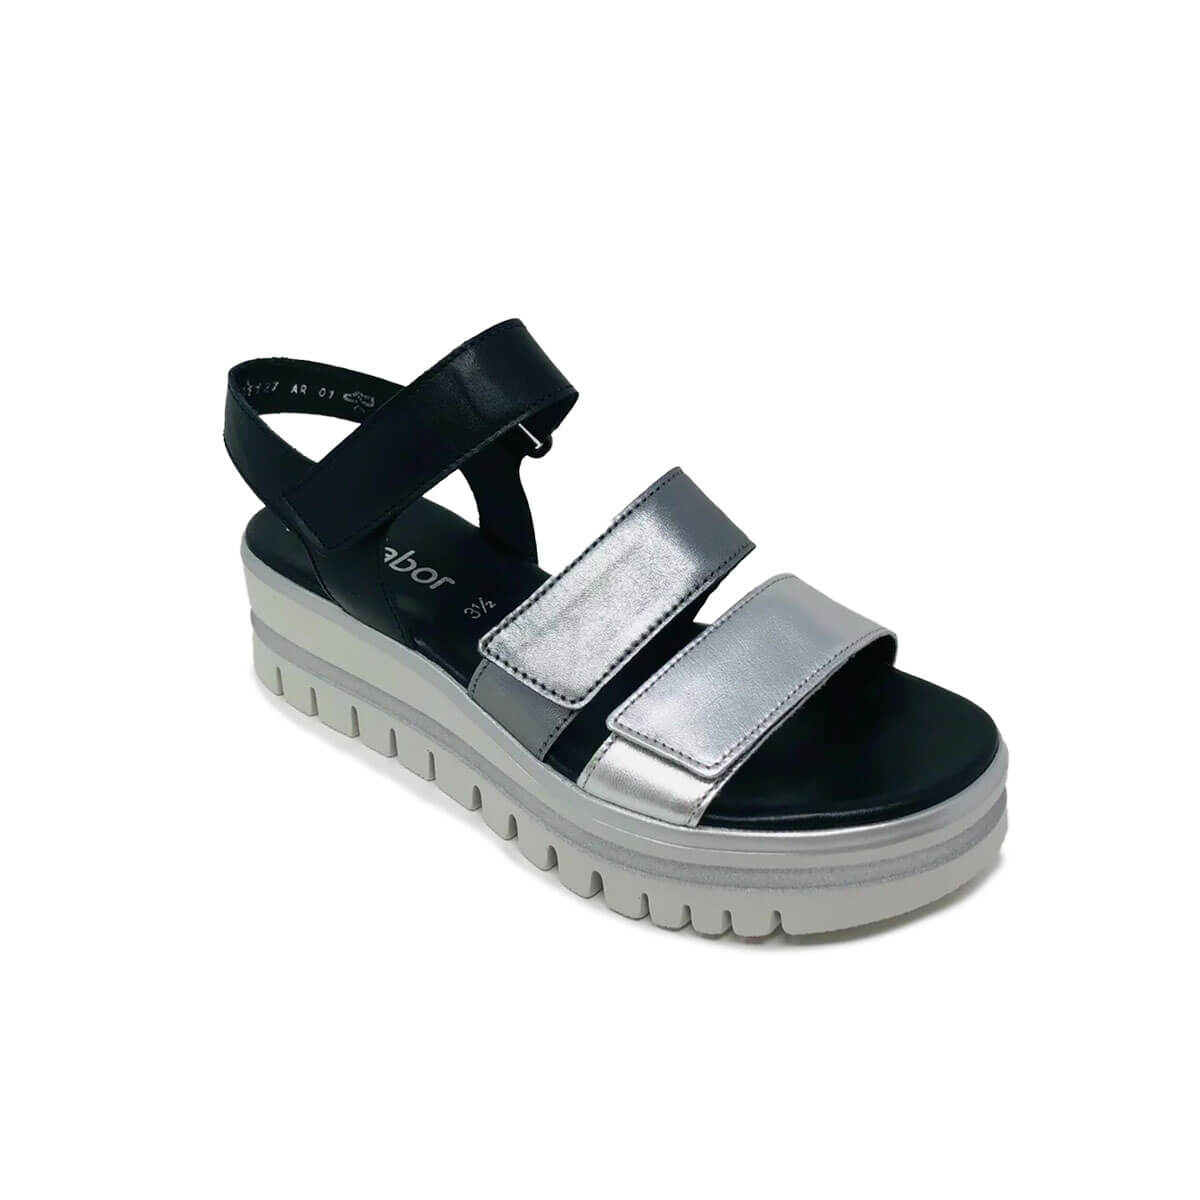 Gabor Adjustable Sandal Black/Silver